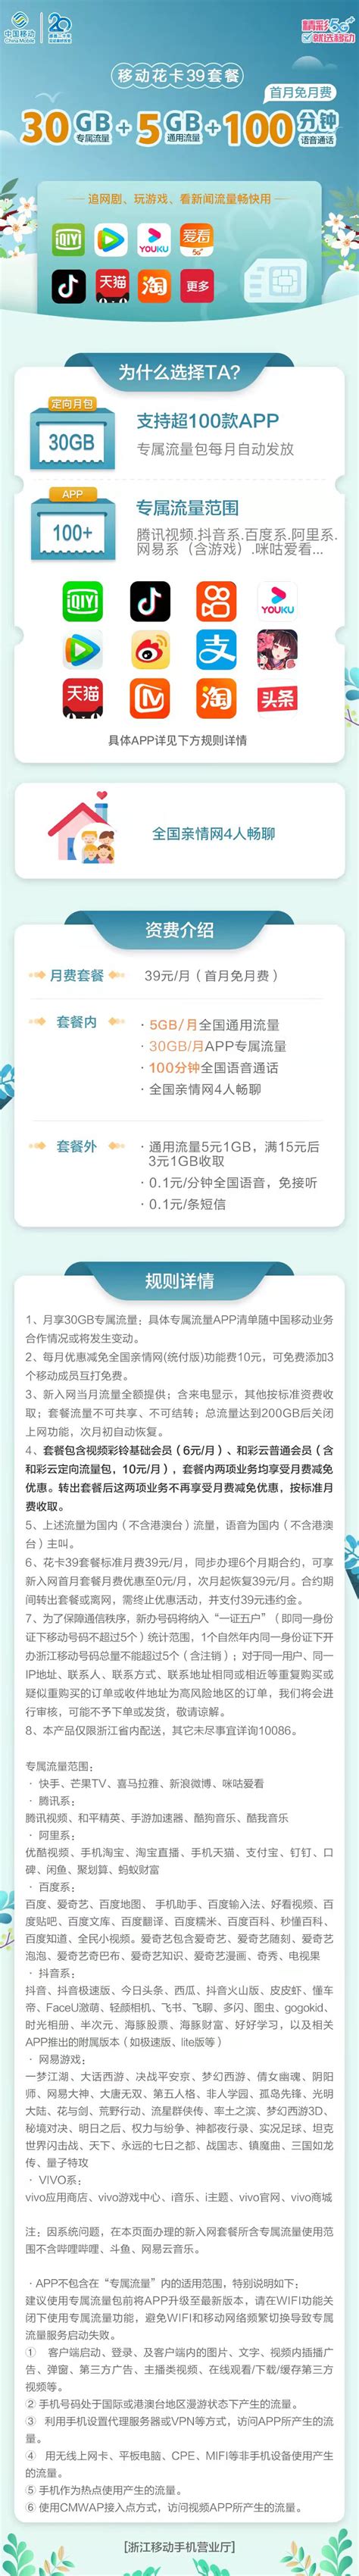 台州移动宽带套餐价格表2022年最新 - 台州移动宽带网